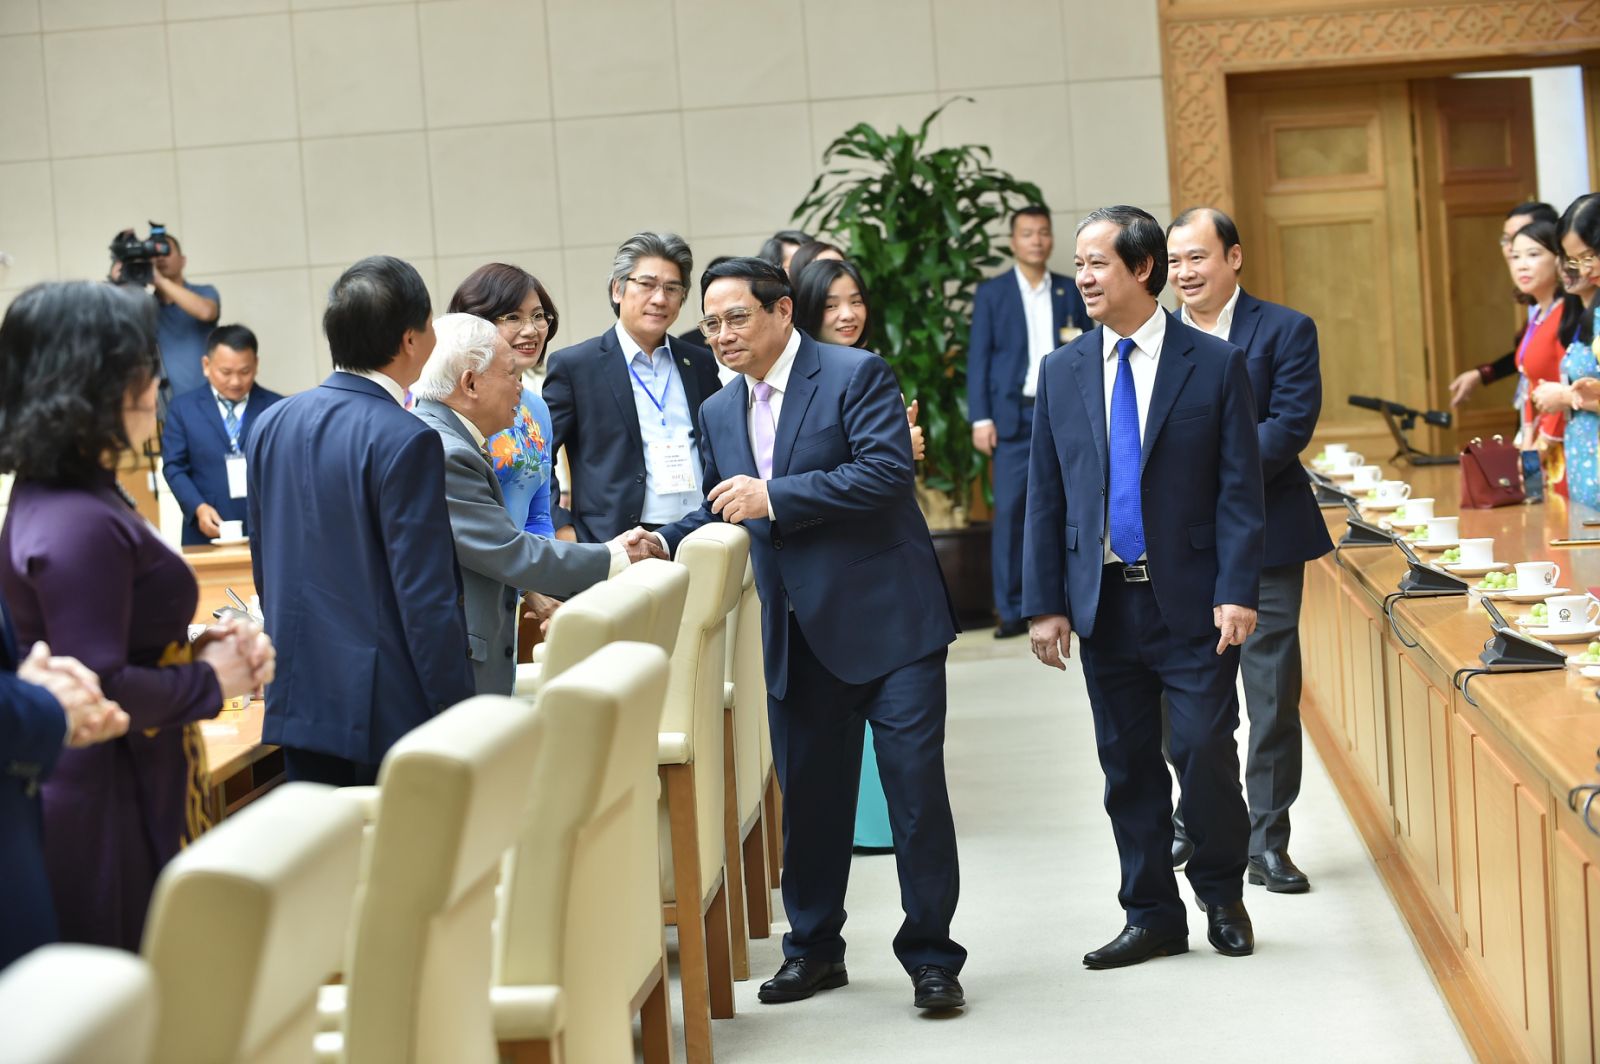 Các nhà giáo vui mừng được gặp Thủ tướng Chính phủ - Ảnh: VGP/Quang Thương